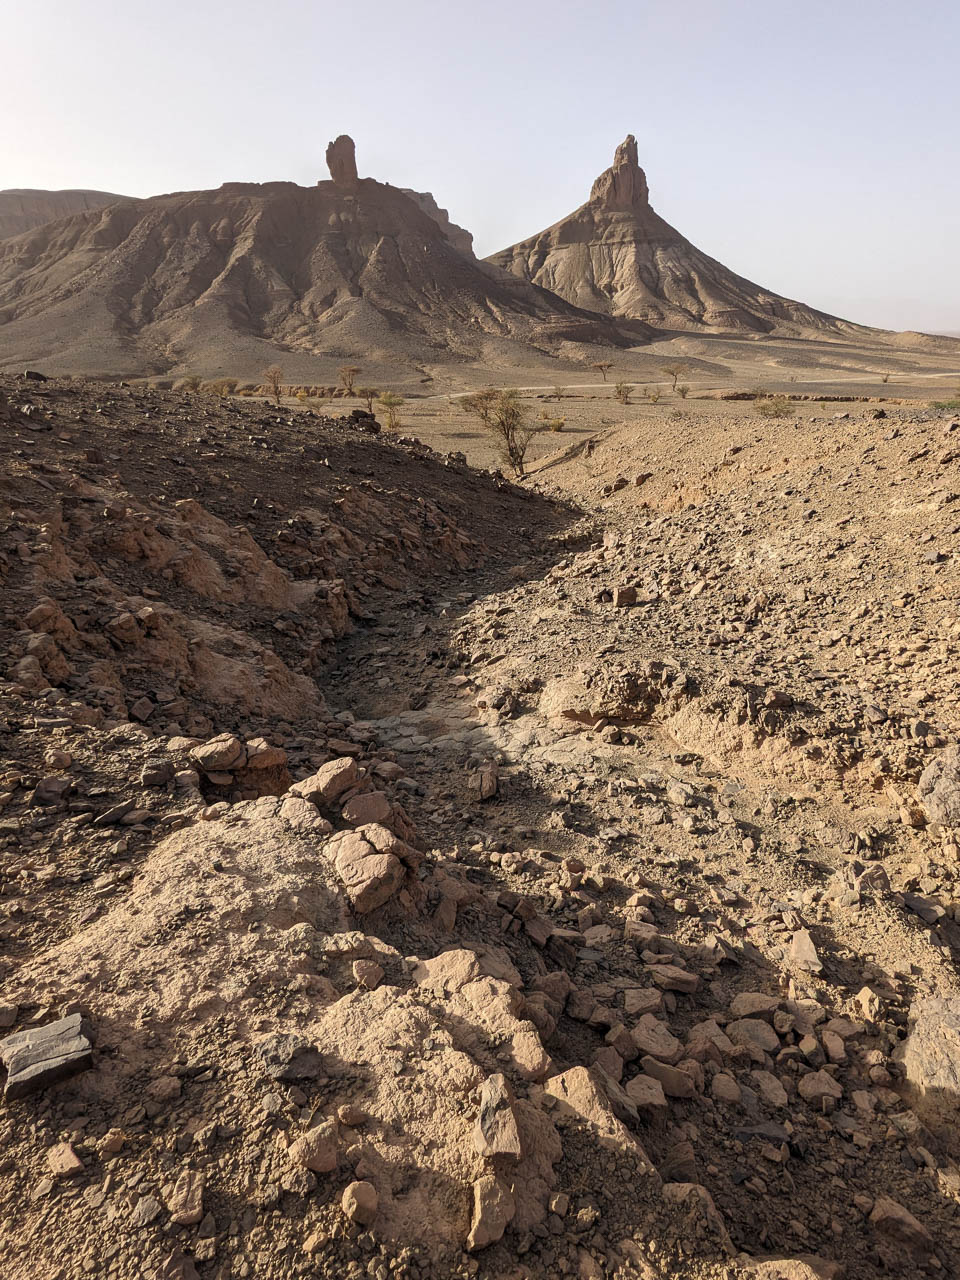 Jagged Peaks in a desert landscape.